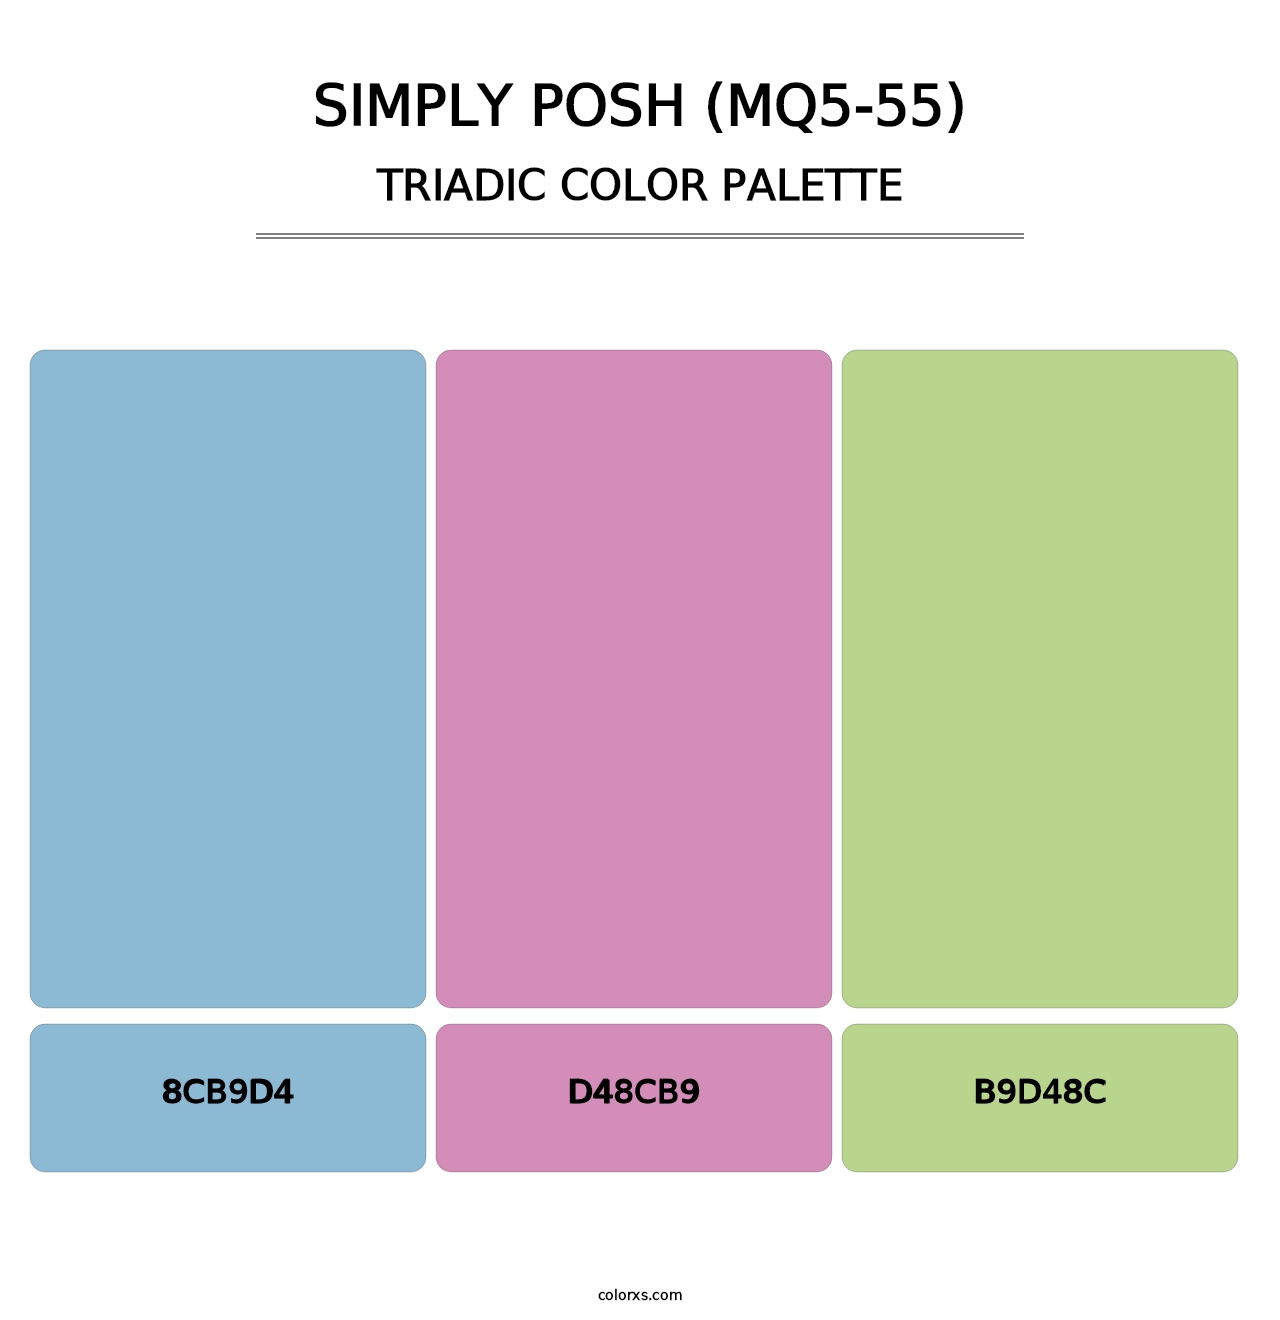 Simply Posh (MQ5-55) - Triadic Color Palette